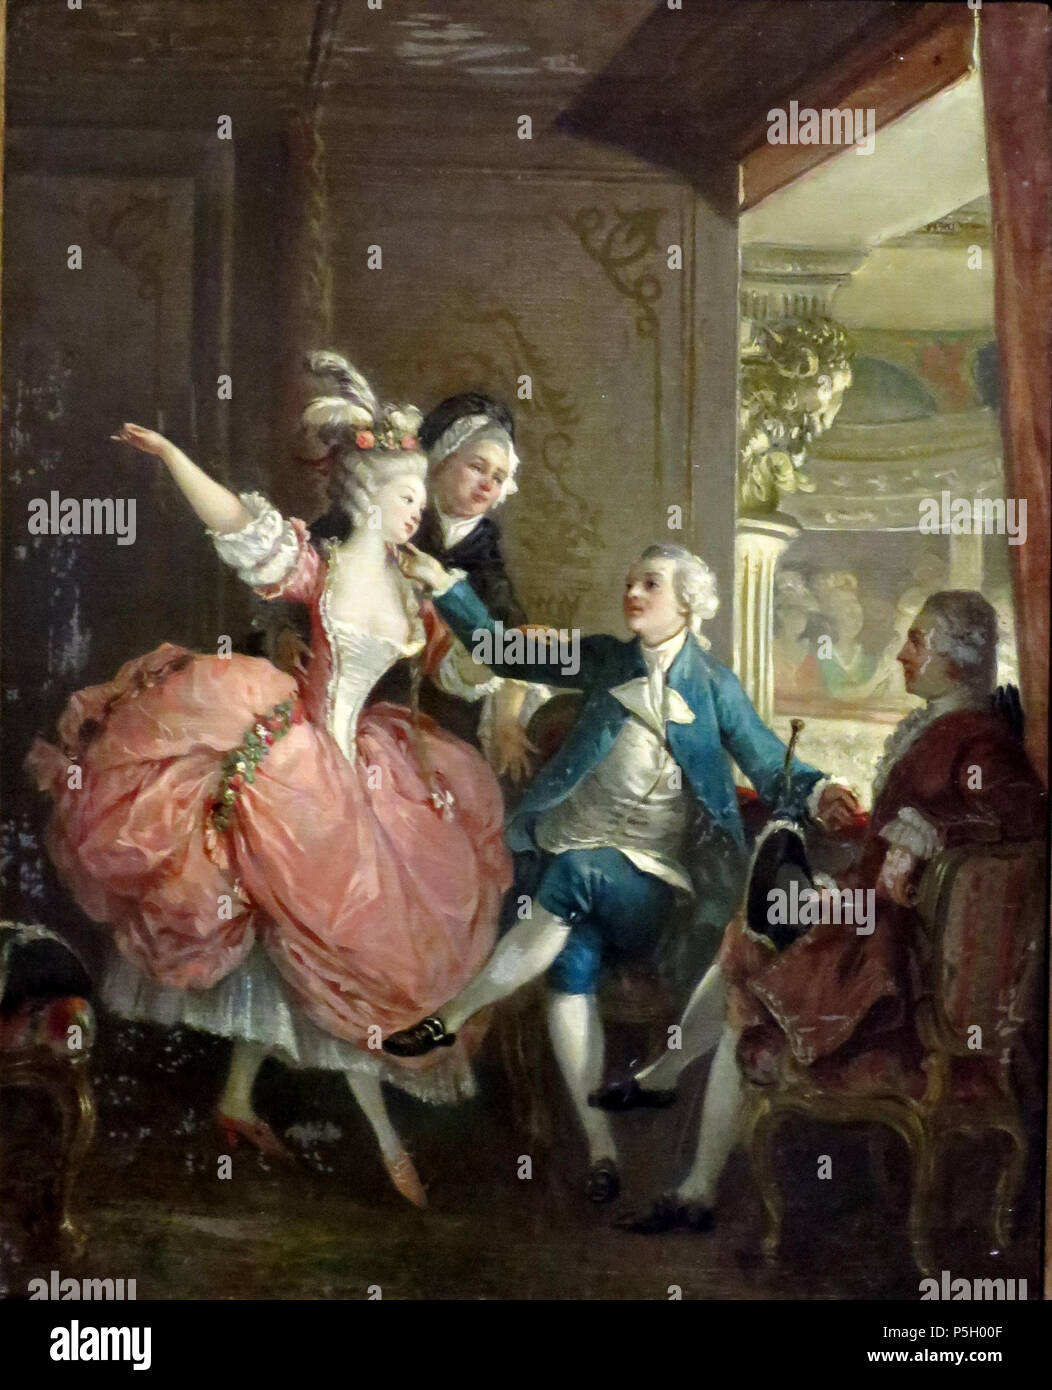 Présentation d'un danseur à l'Opéra fin du 18e siècle. N/A 3 'Présentation d'un danseur à l'Opéra', cercle de Jean-Michel Moreau, le jeune Banque D'Images